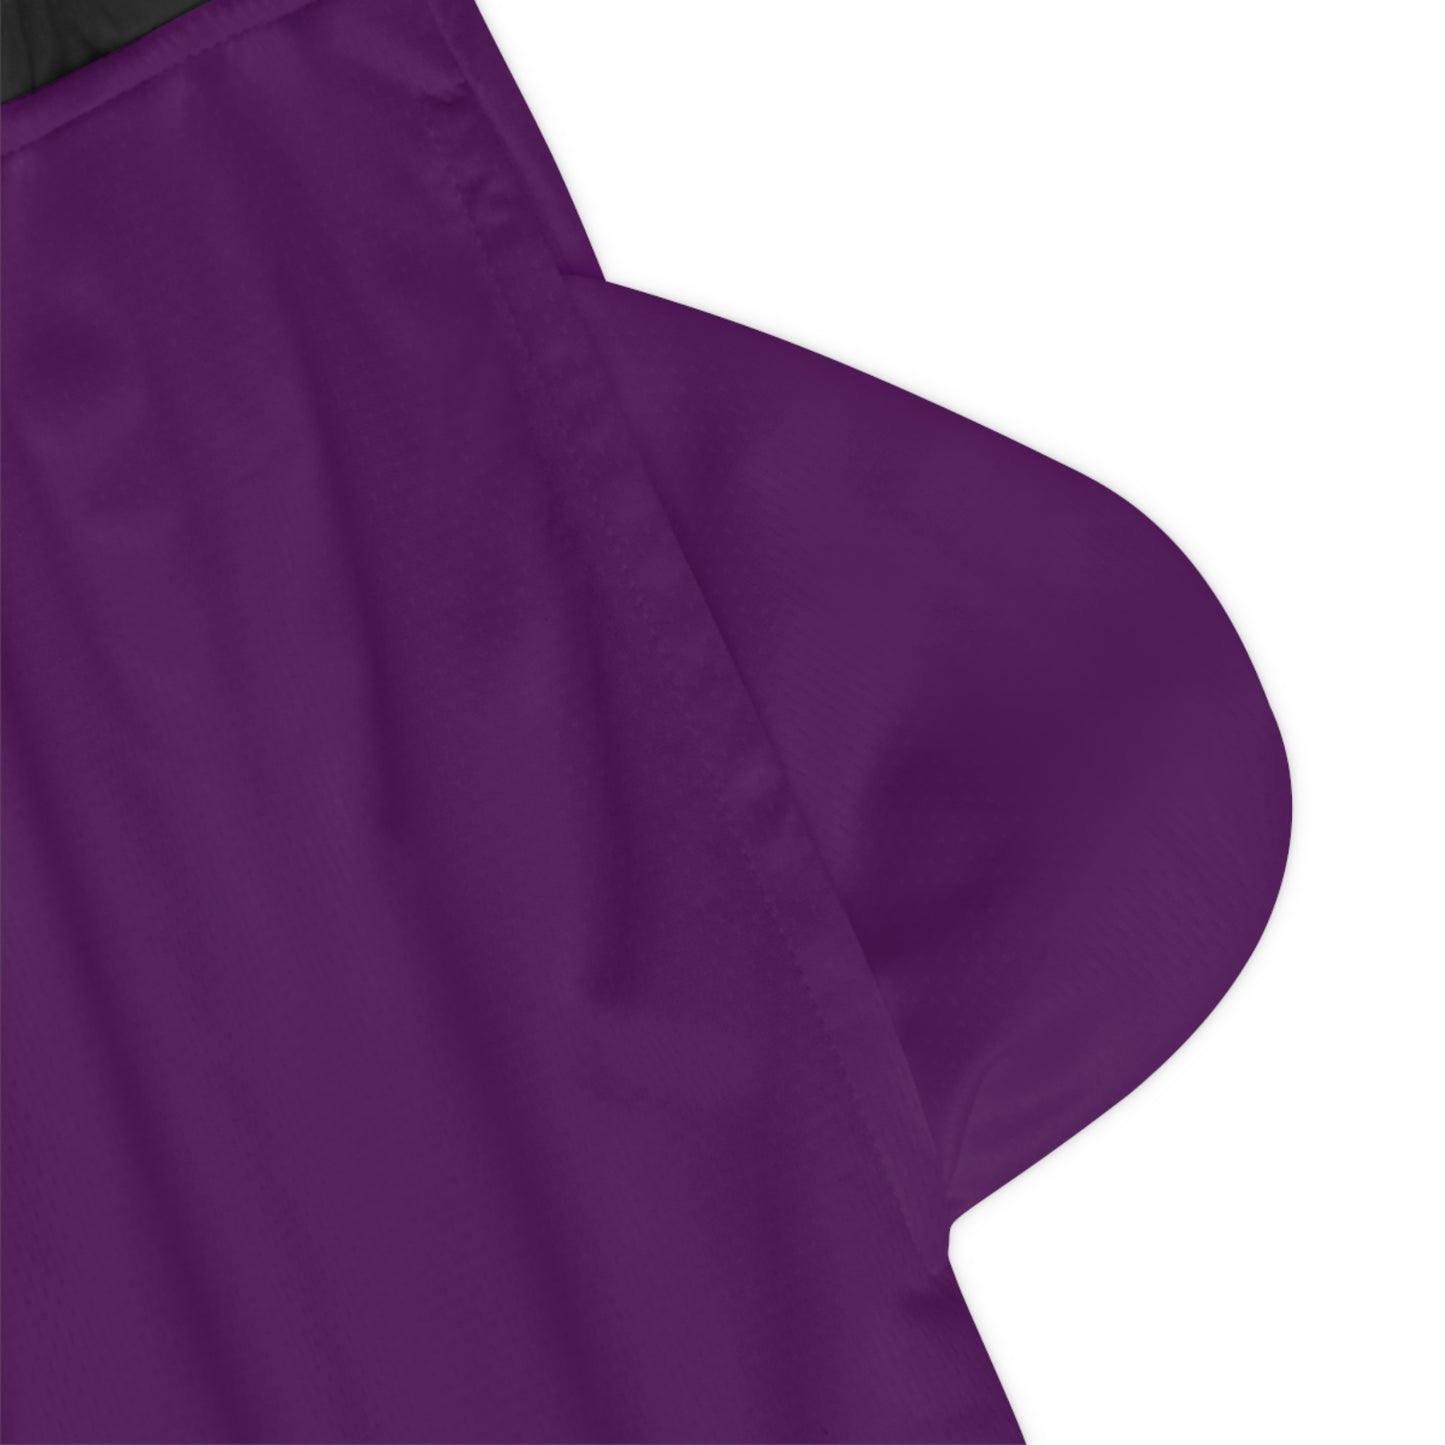 Snooty Fox Art Basketball Rib Shorts (AOP) - Mex Purple